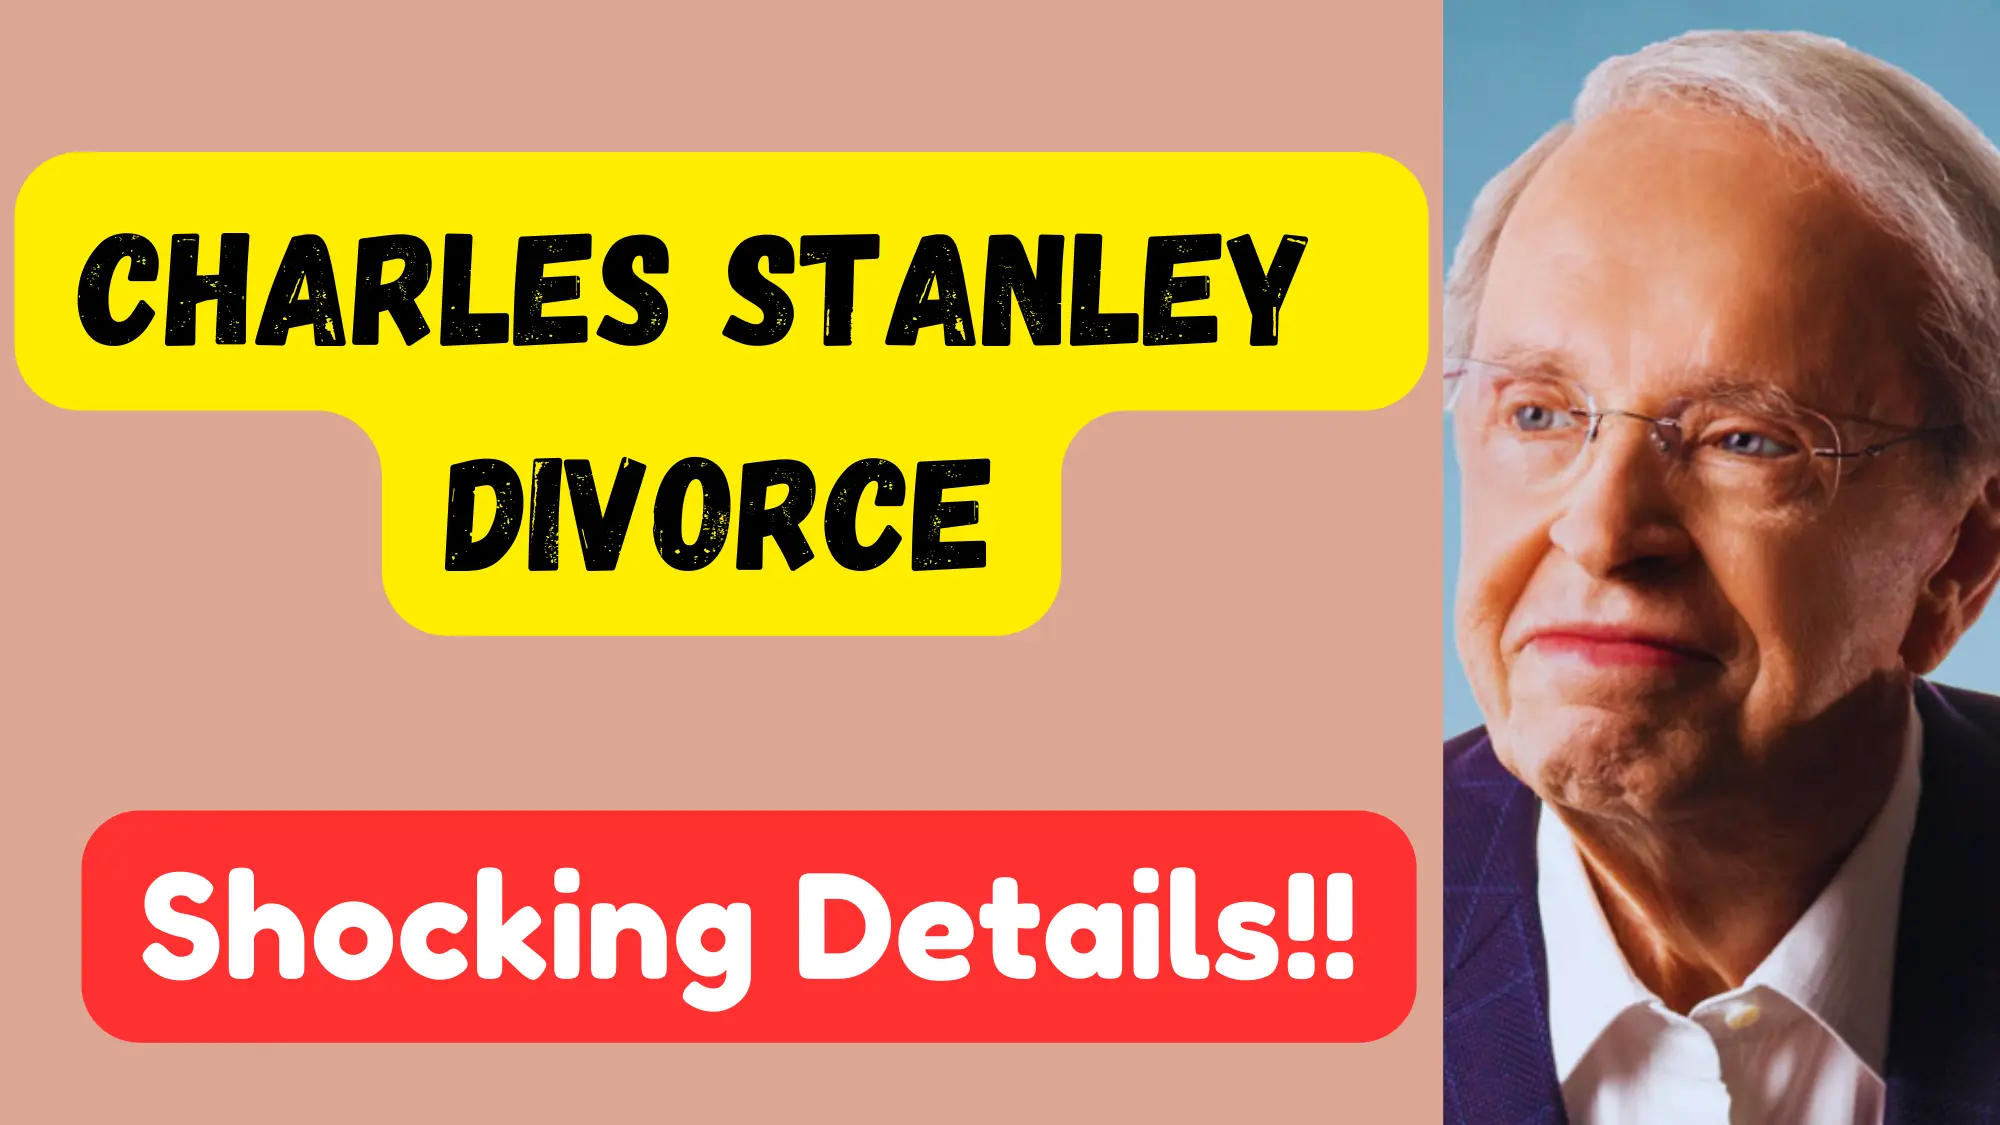 Charles Stanley Divorce